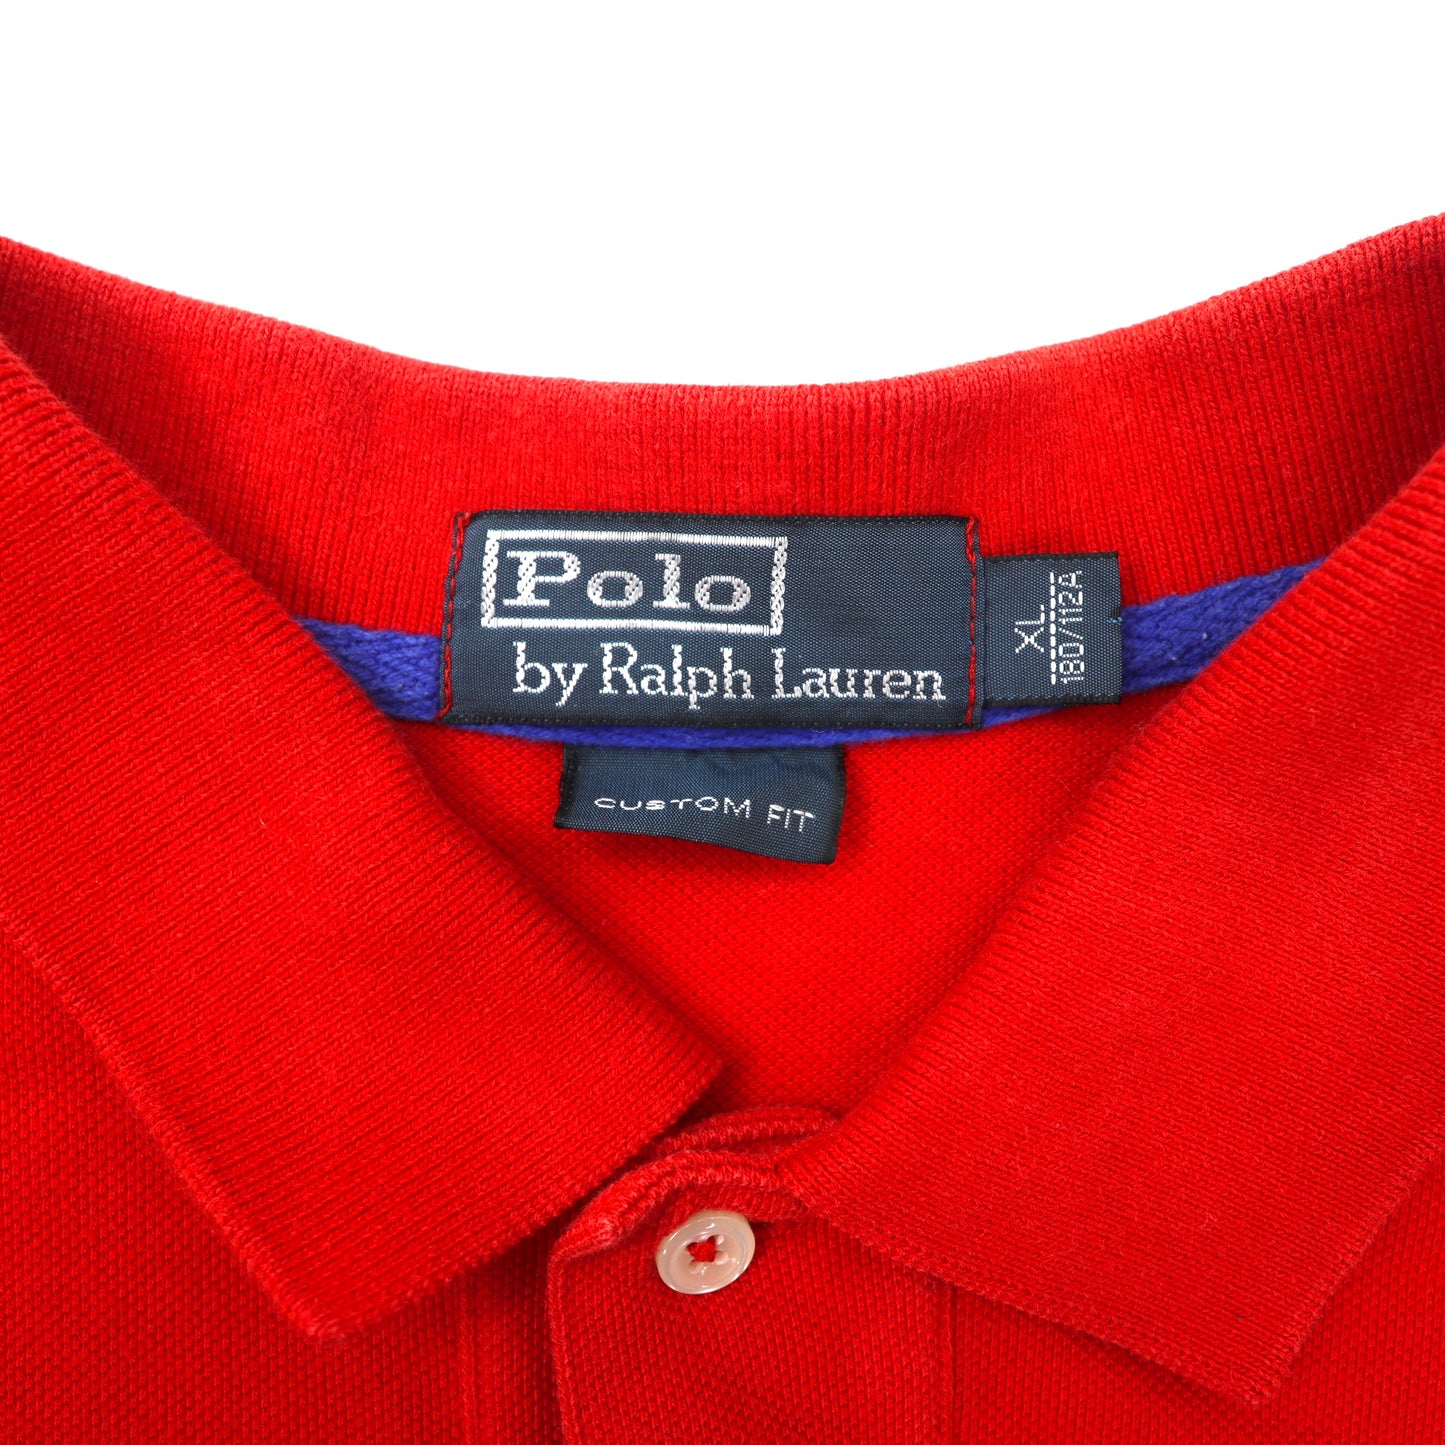 Polo by Ralph Lauren ポロシャツ XL レッド USA ナンバリング ビッグポニー刺繍